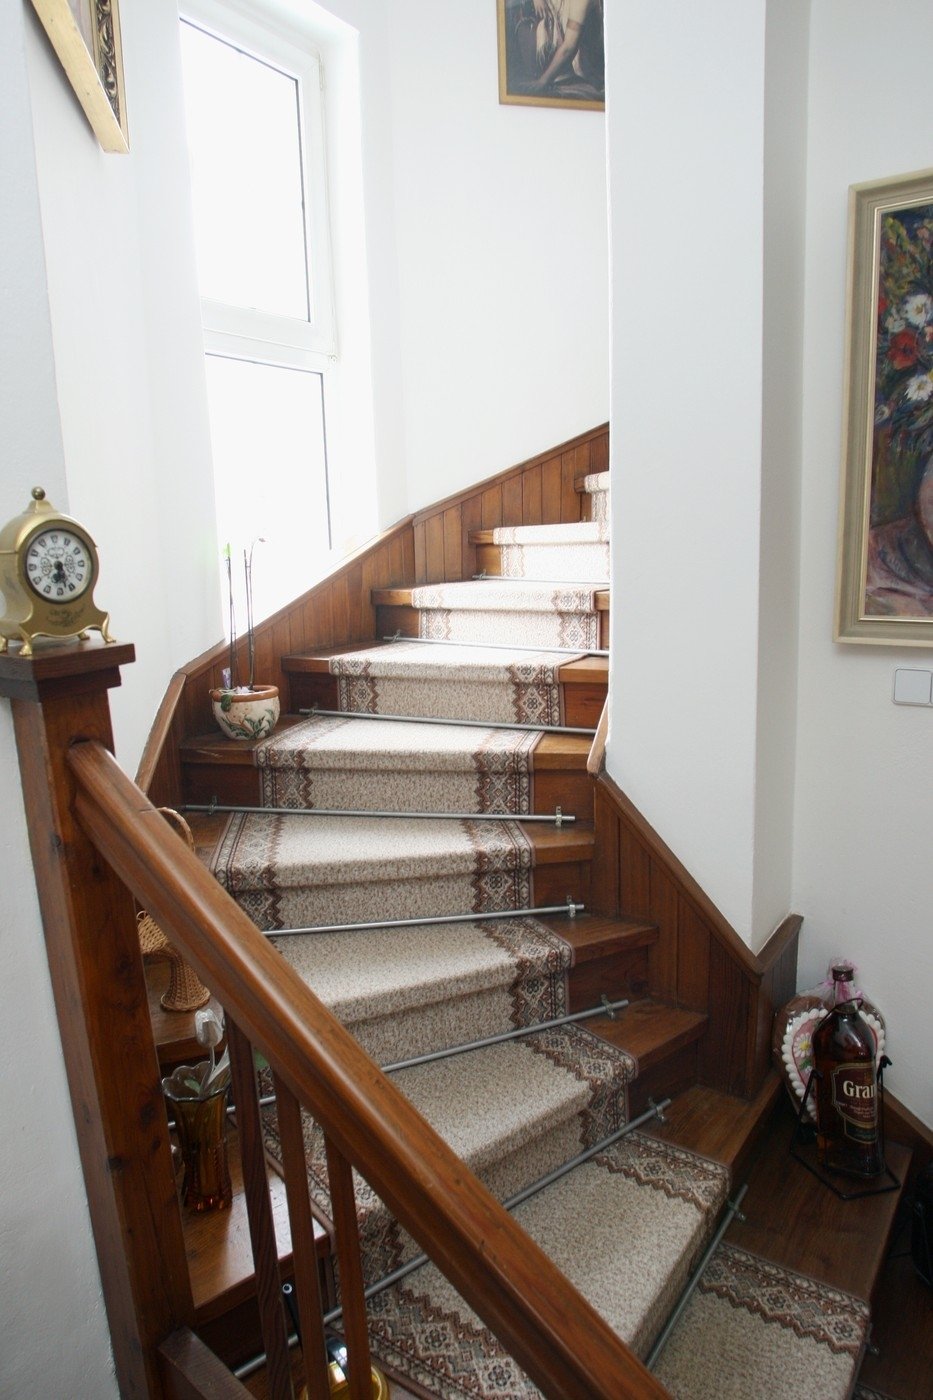 Trávníček má i točité schody jako na zámku.